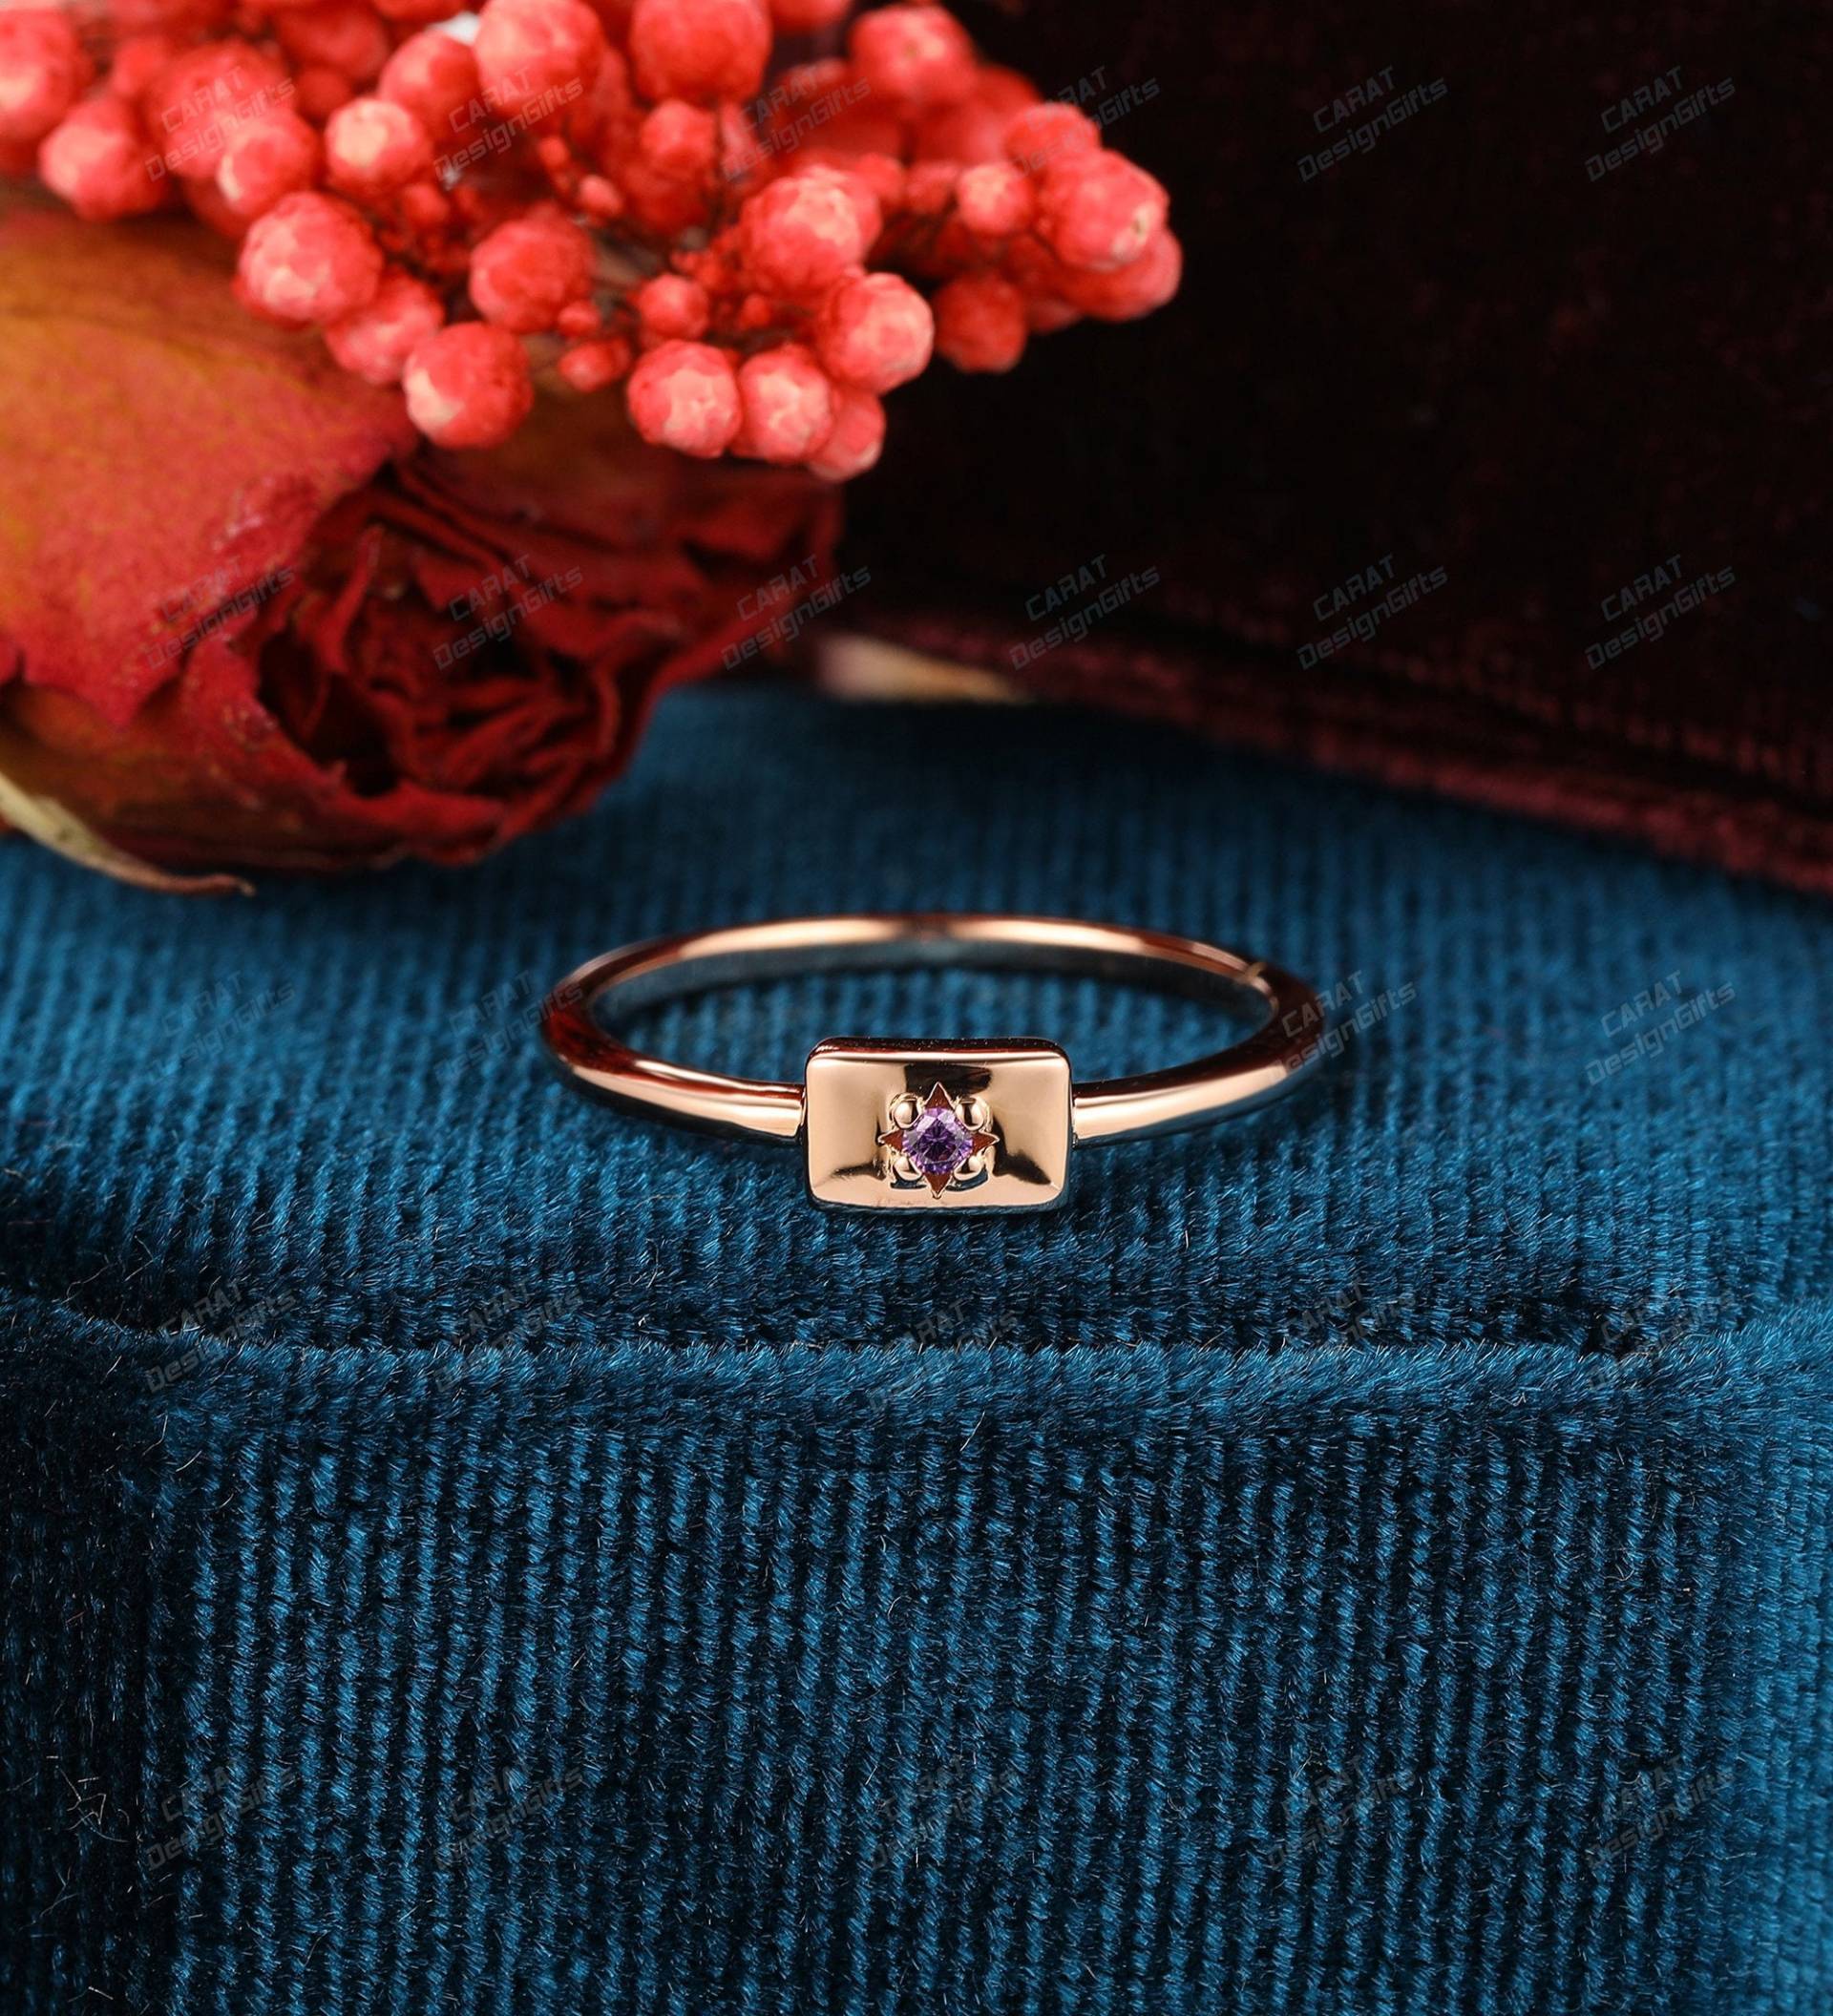 Zarter Edelstein Ring, Natürlicher Amethyst Verlobungsring, Einzigartiger Handgemachter Geburtstagsgeschenk, Massiver Rose Gold Ring, Individueller von CaratDesignGifts